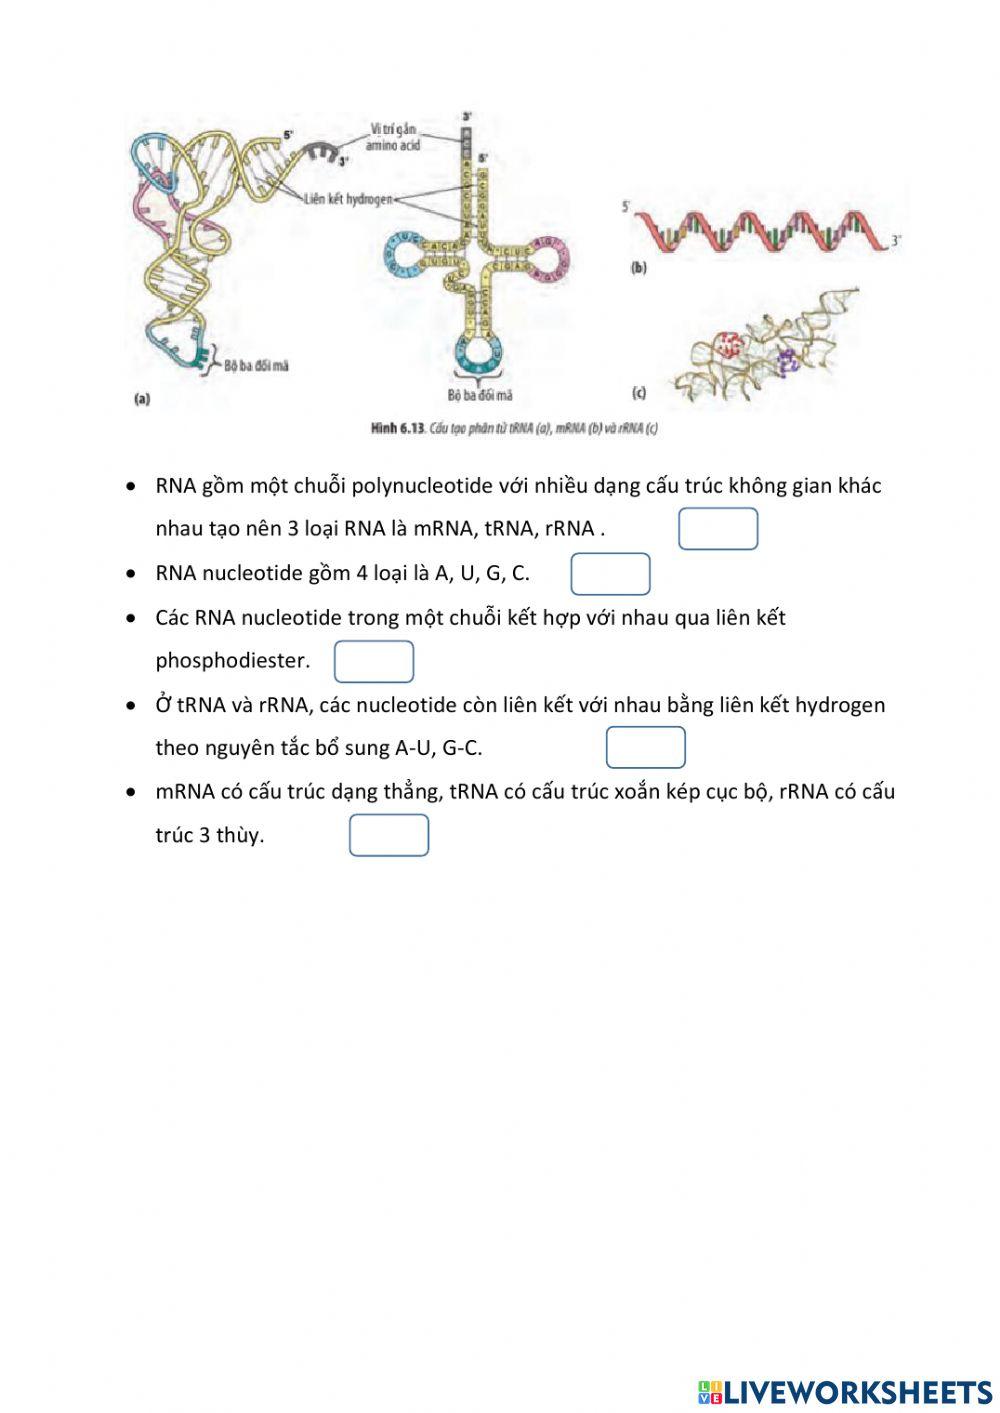 Nucleic acid